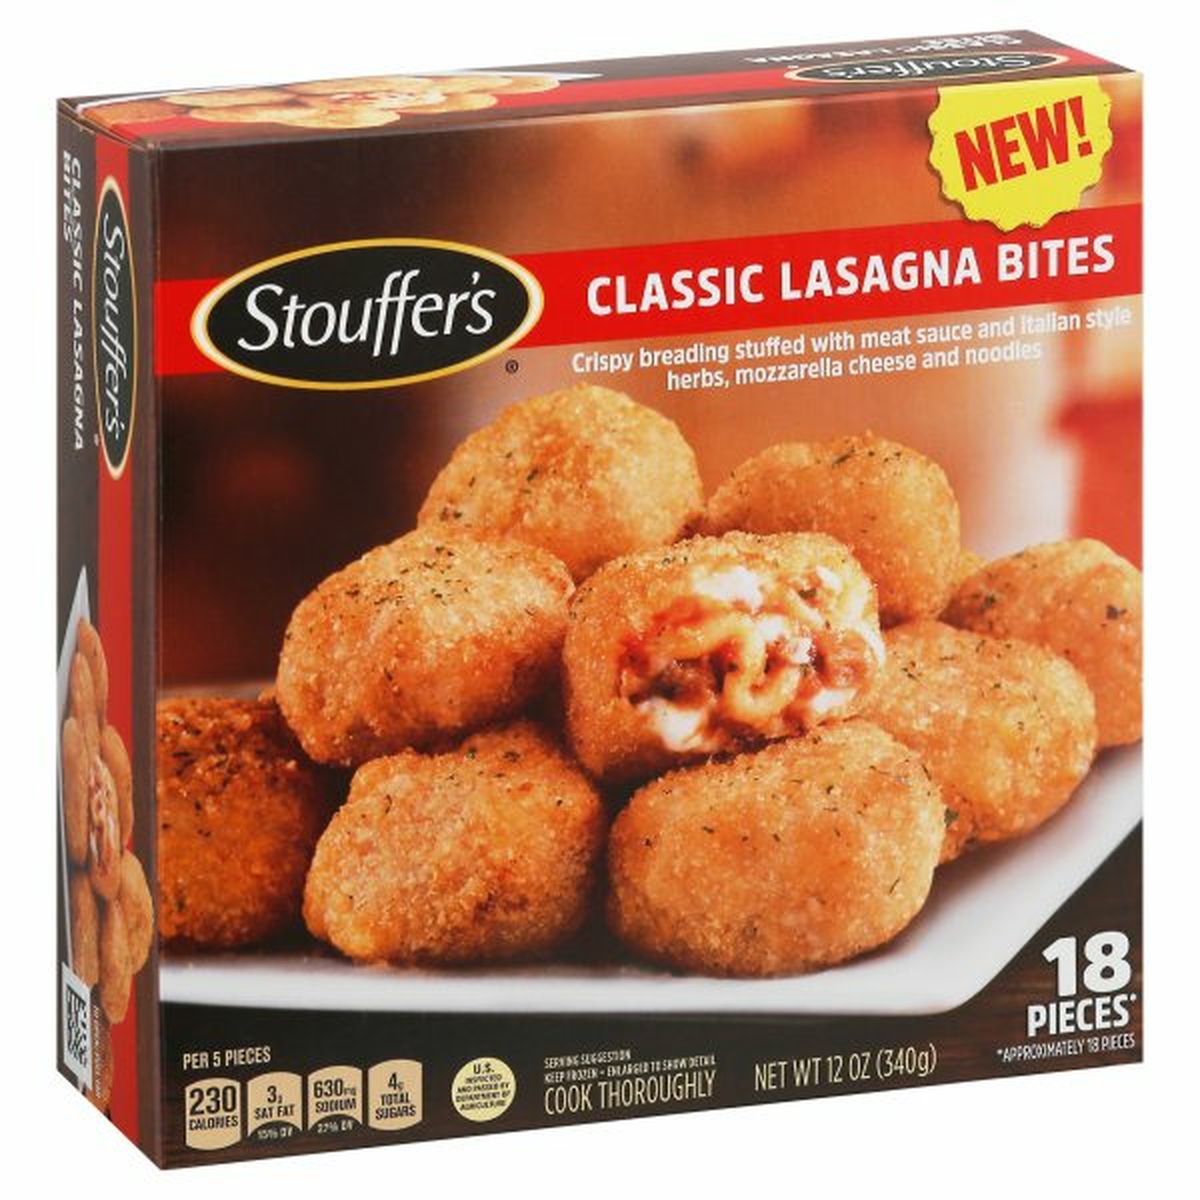 Calories in Stouffer's Lasagna Bites, Classic